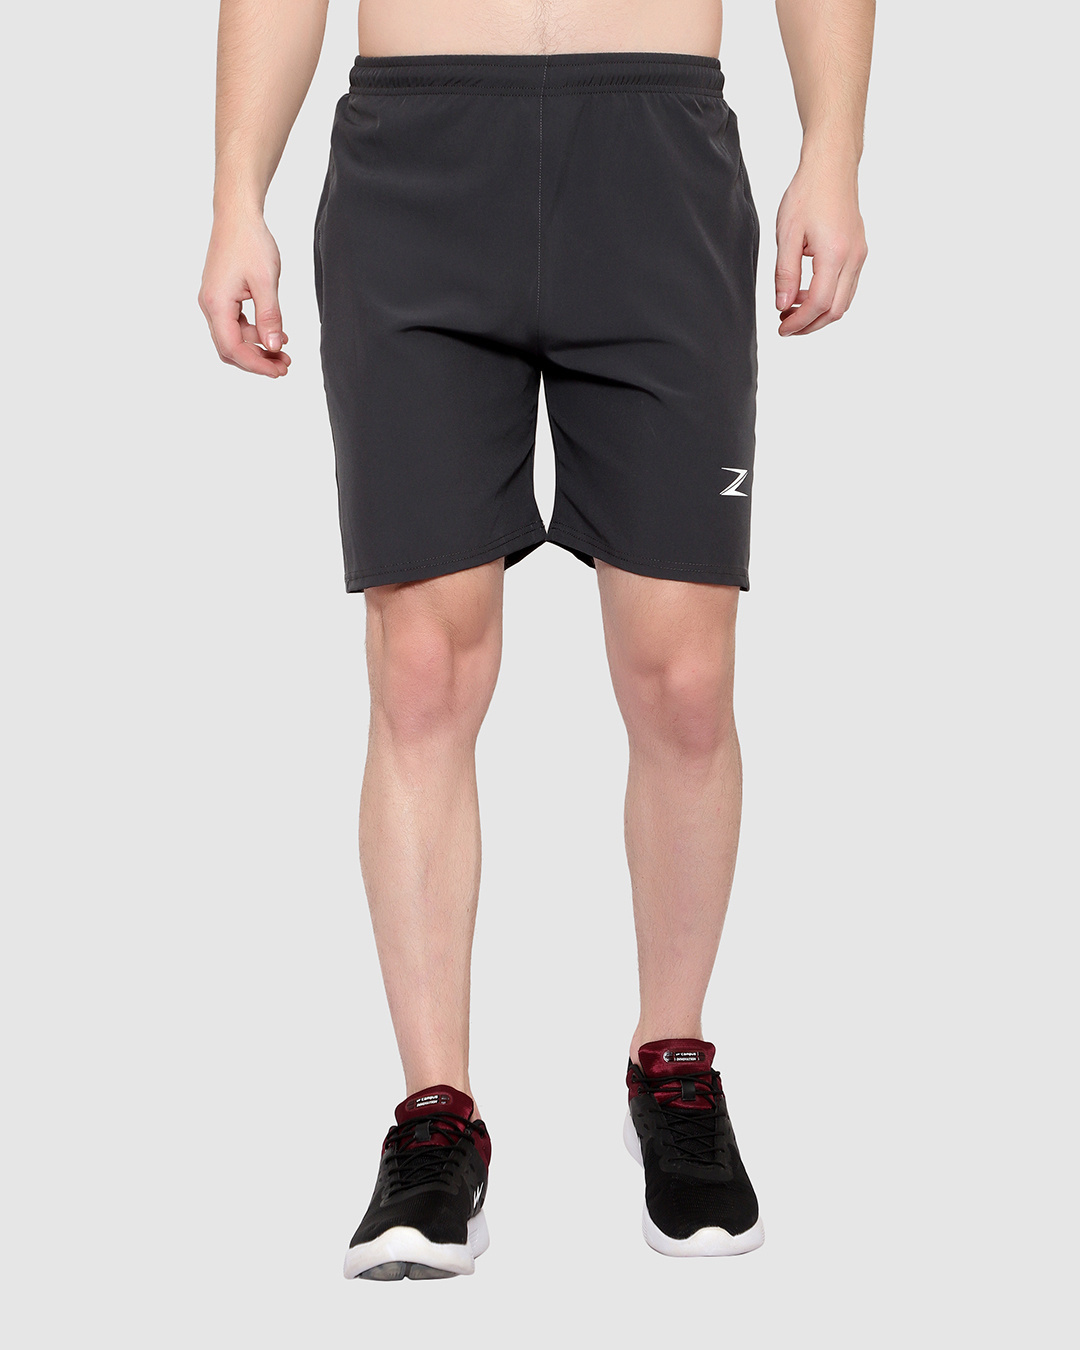 Buy Men's Grey Low-rise Shorts for Men Grey Online at Bewakoof